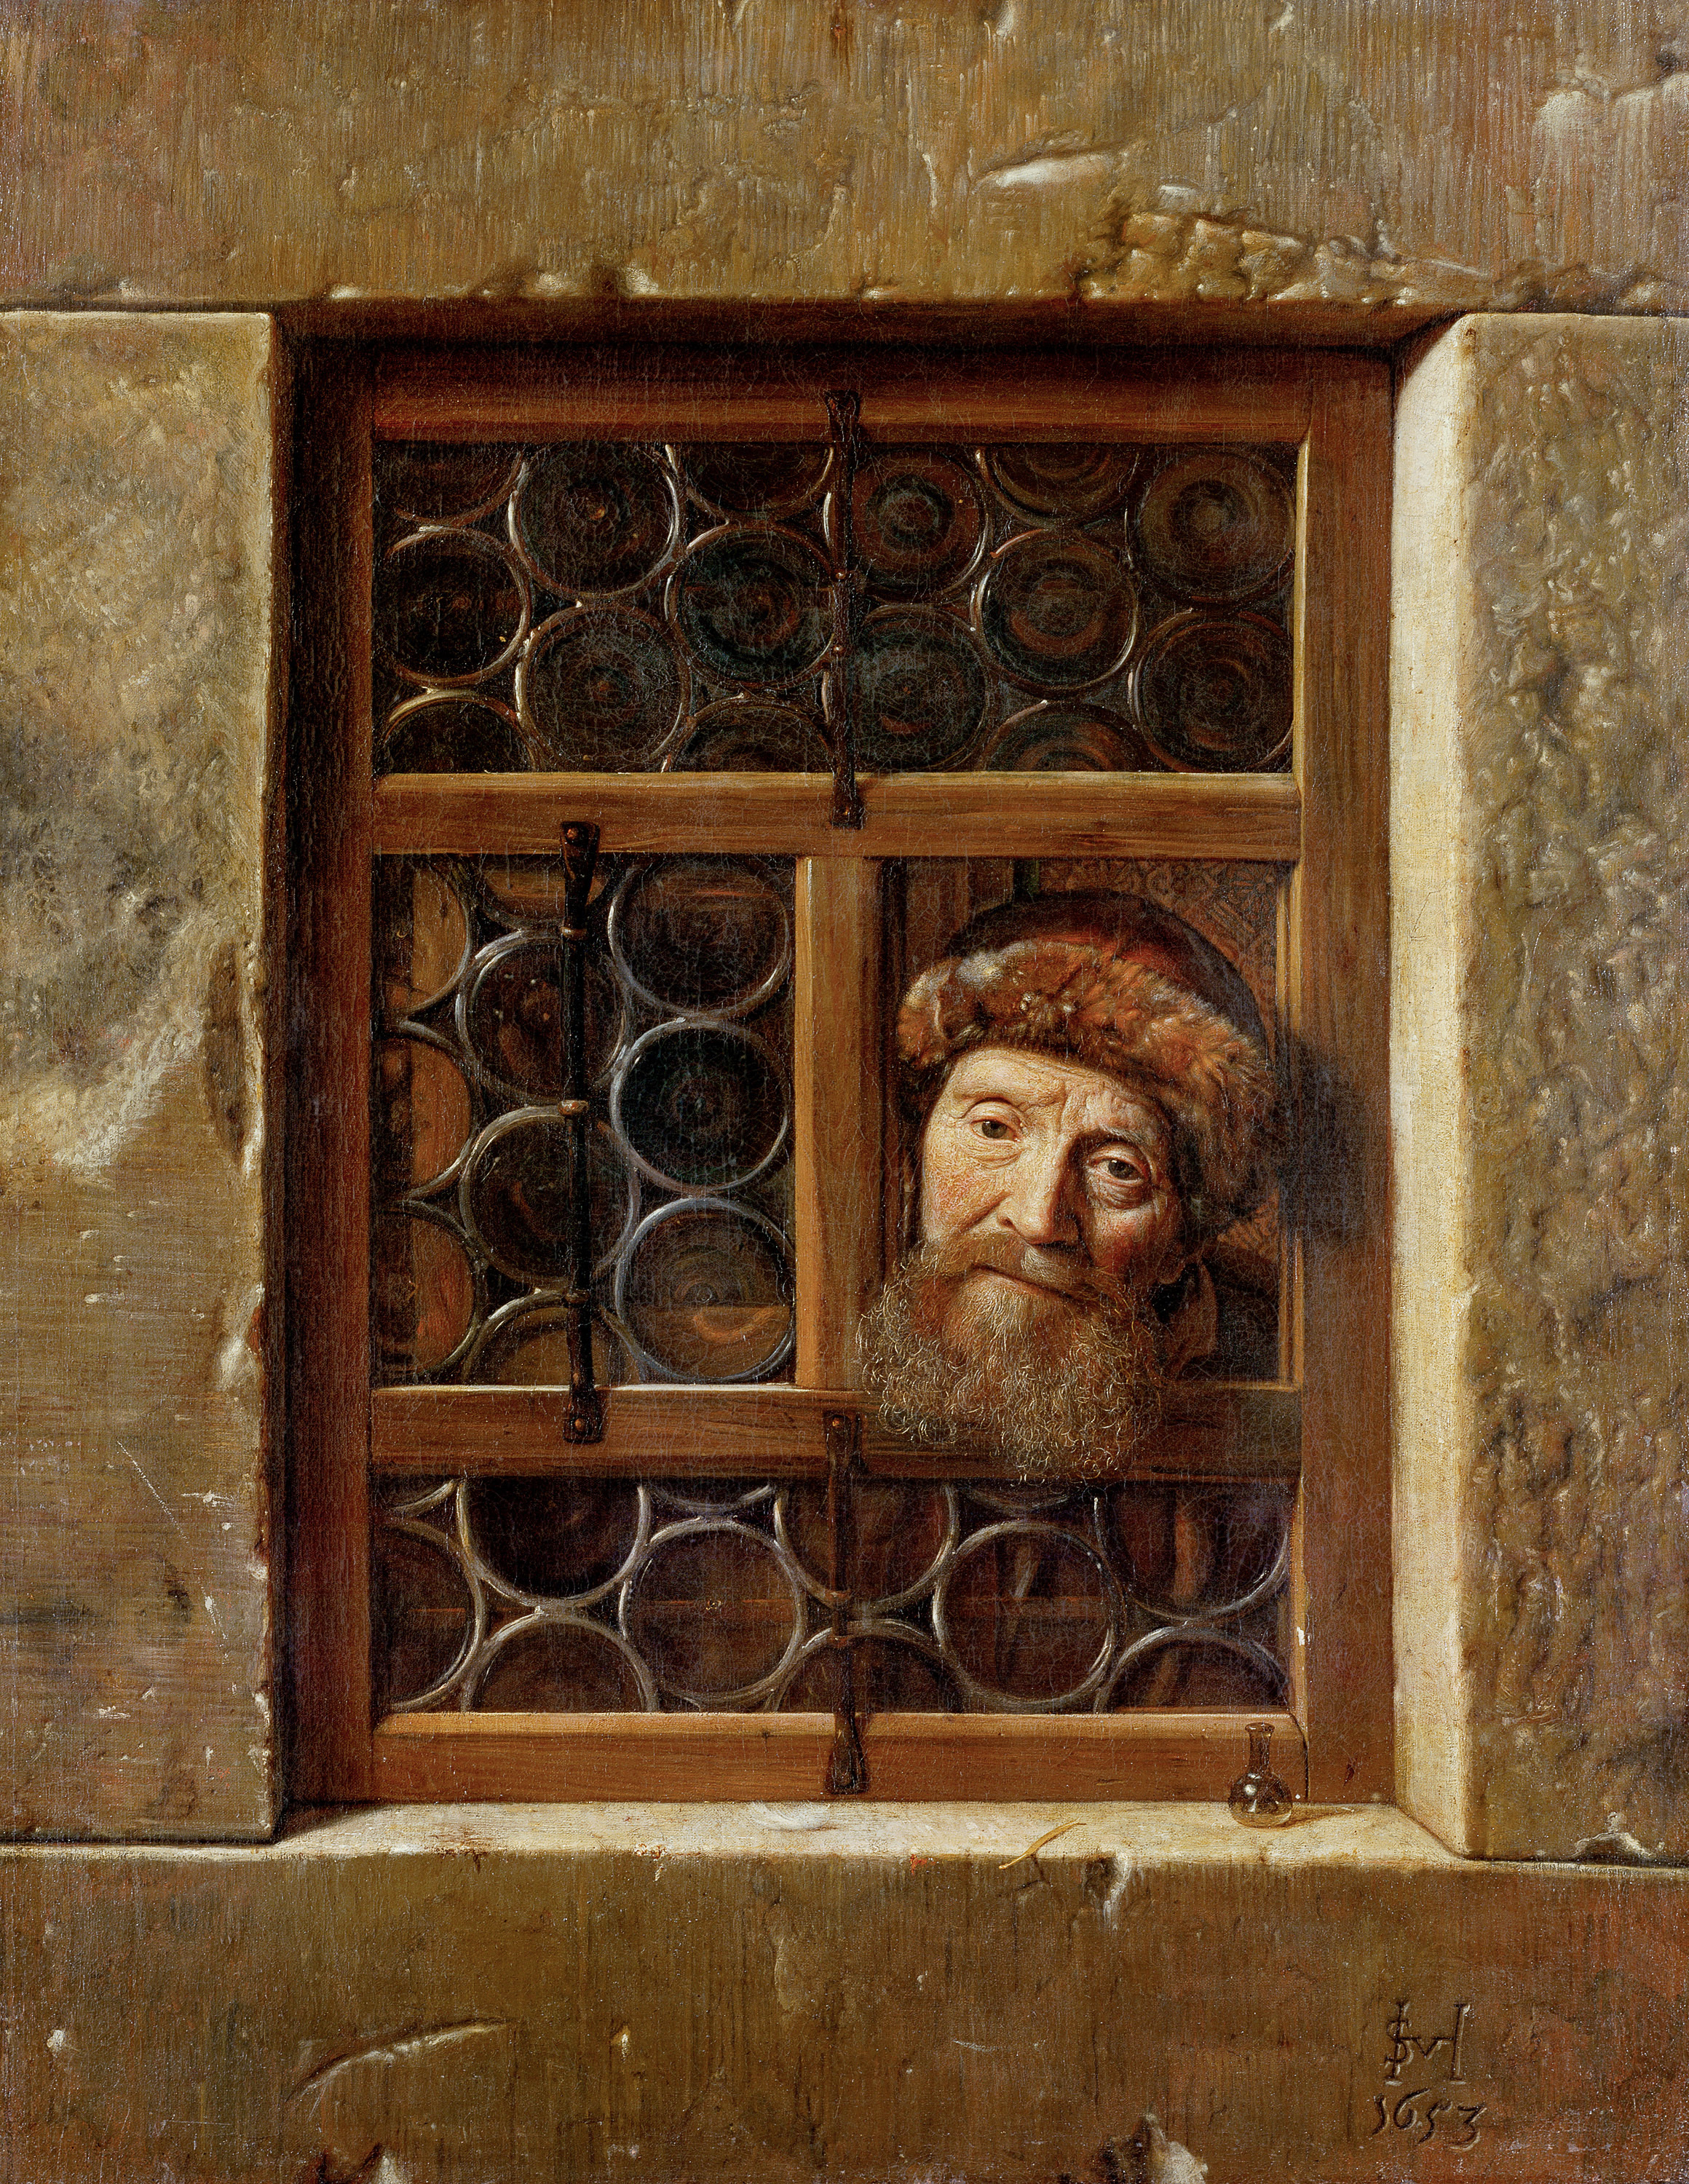 Bătrân la fereastră by Samuel van Hoogstraten - 1653 - 111 cm × 86,5 cm 